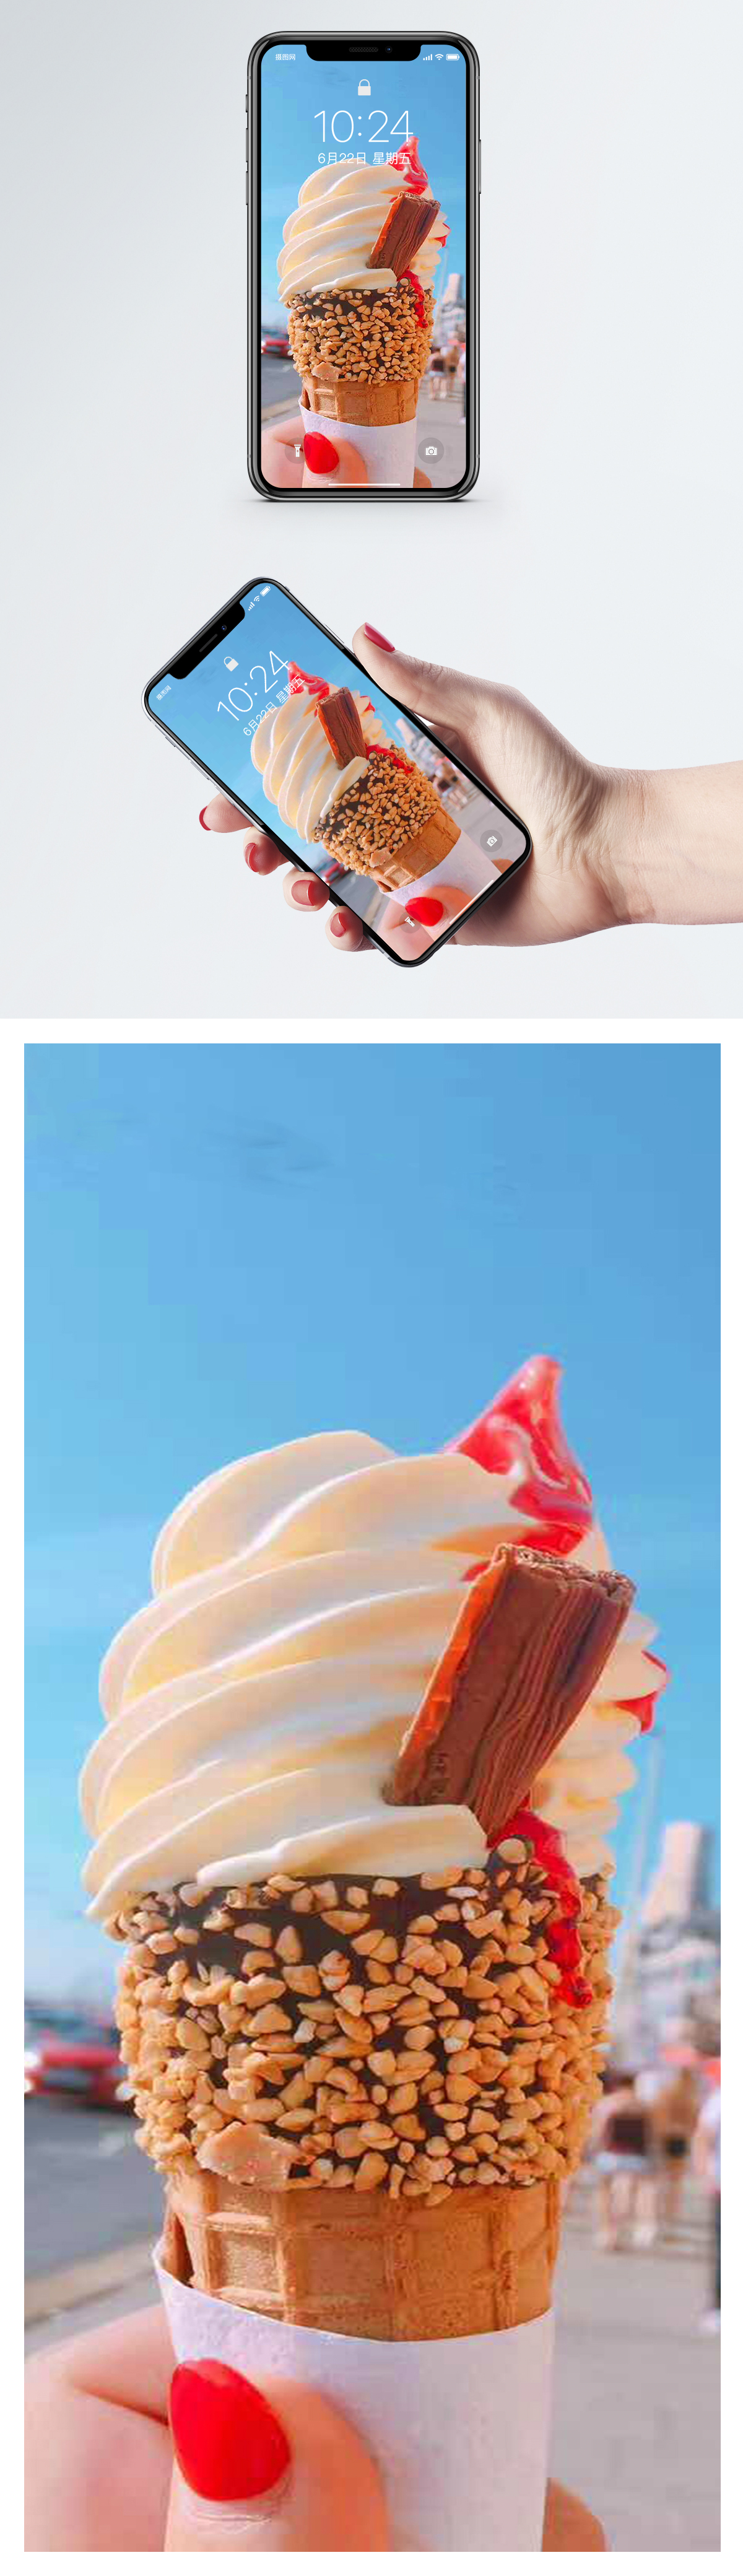 夏のアイスクリームモバイル壁紙イメージ 背景 Id 400462224 Prf画像フォーマットjpg Jp Lovepik Com